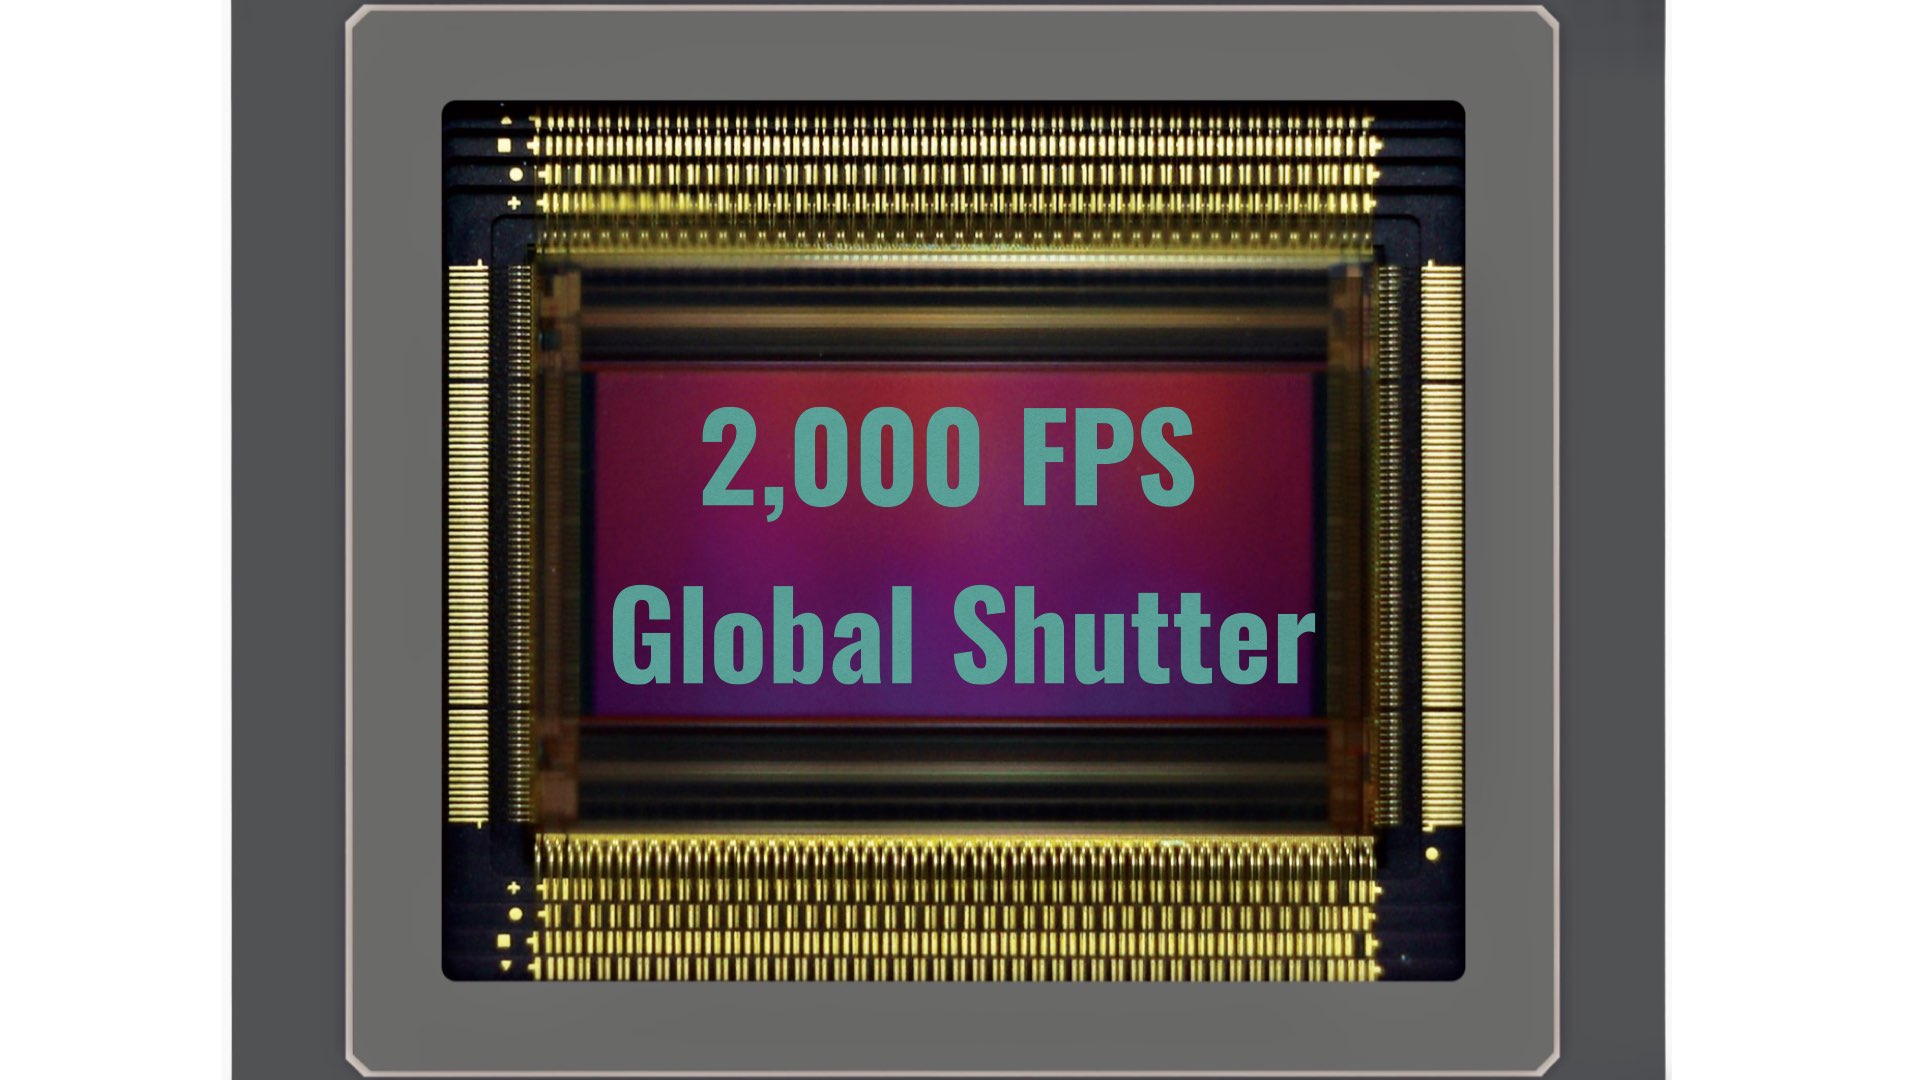 Gpixel Announces New 4K, Global Shutter, 2,000 FPS CMOS Sensor